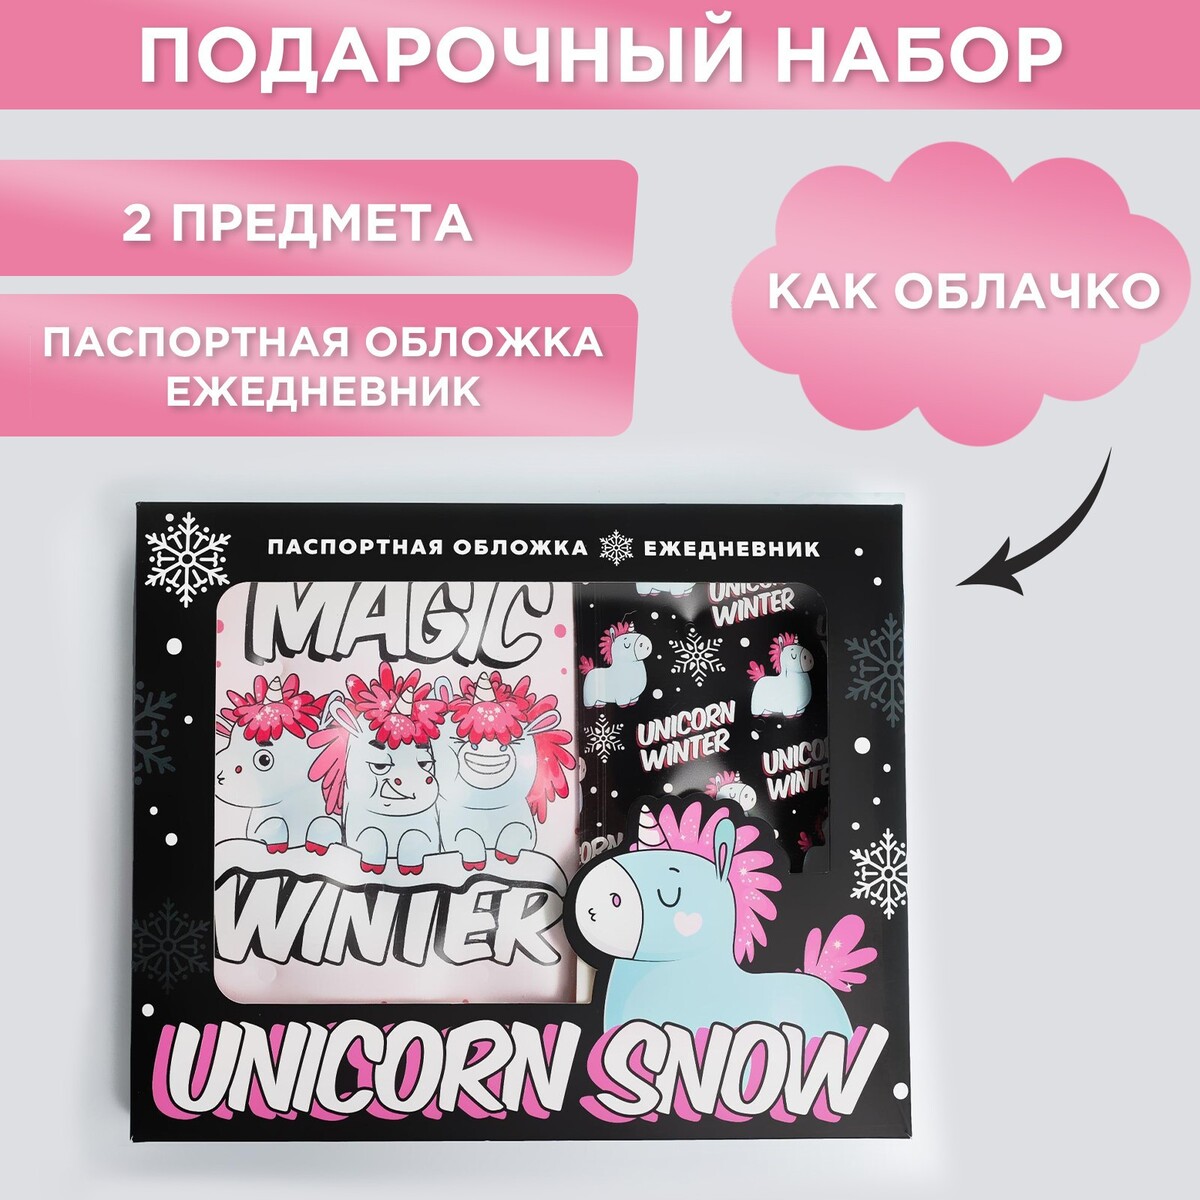 Набор unicorn snow: паспортная обложка-облачко и ежедневник-облачко набор детской посуды 6 предметов wmf unicorn единорог